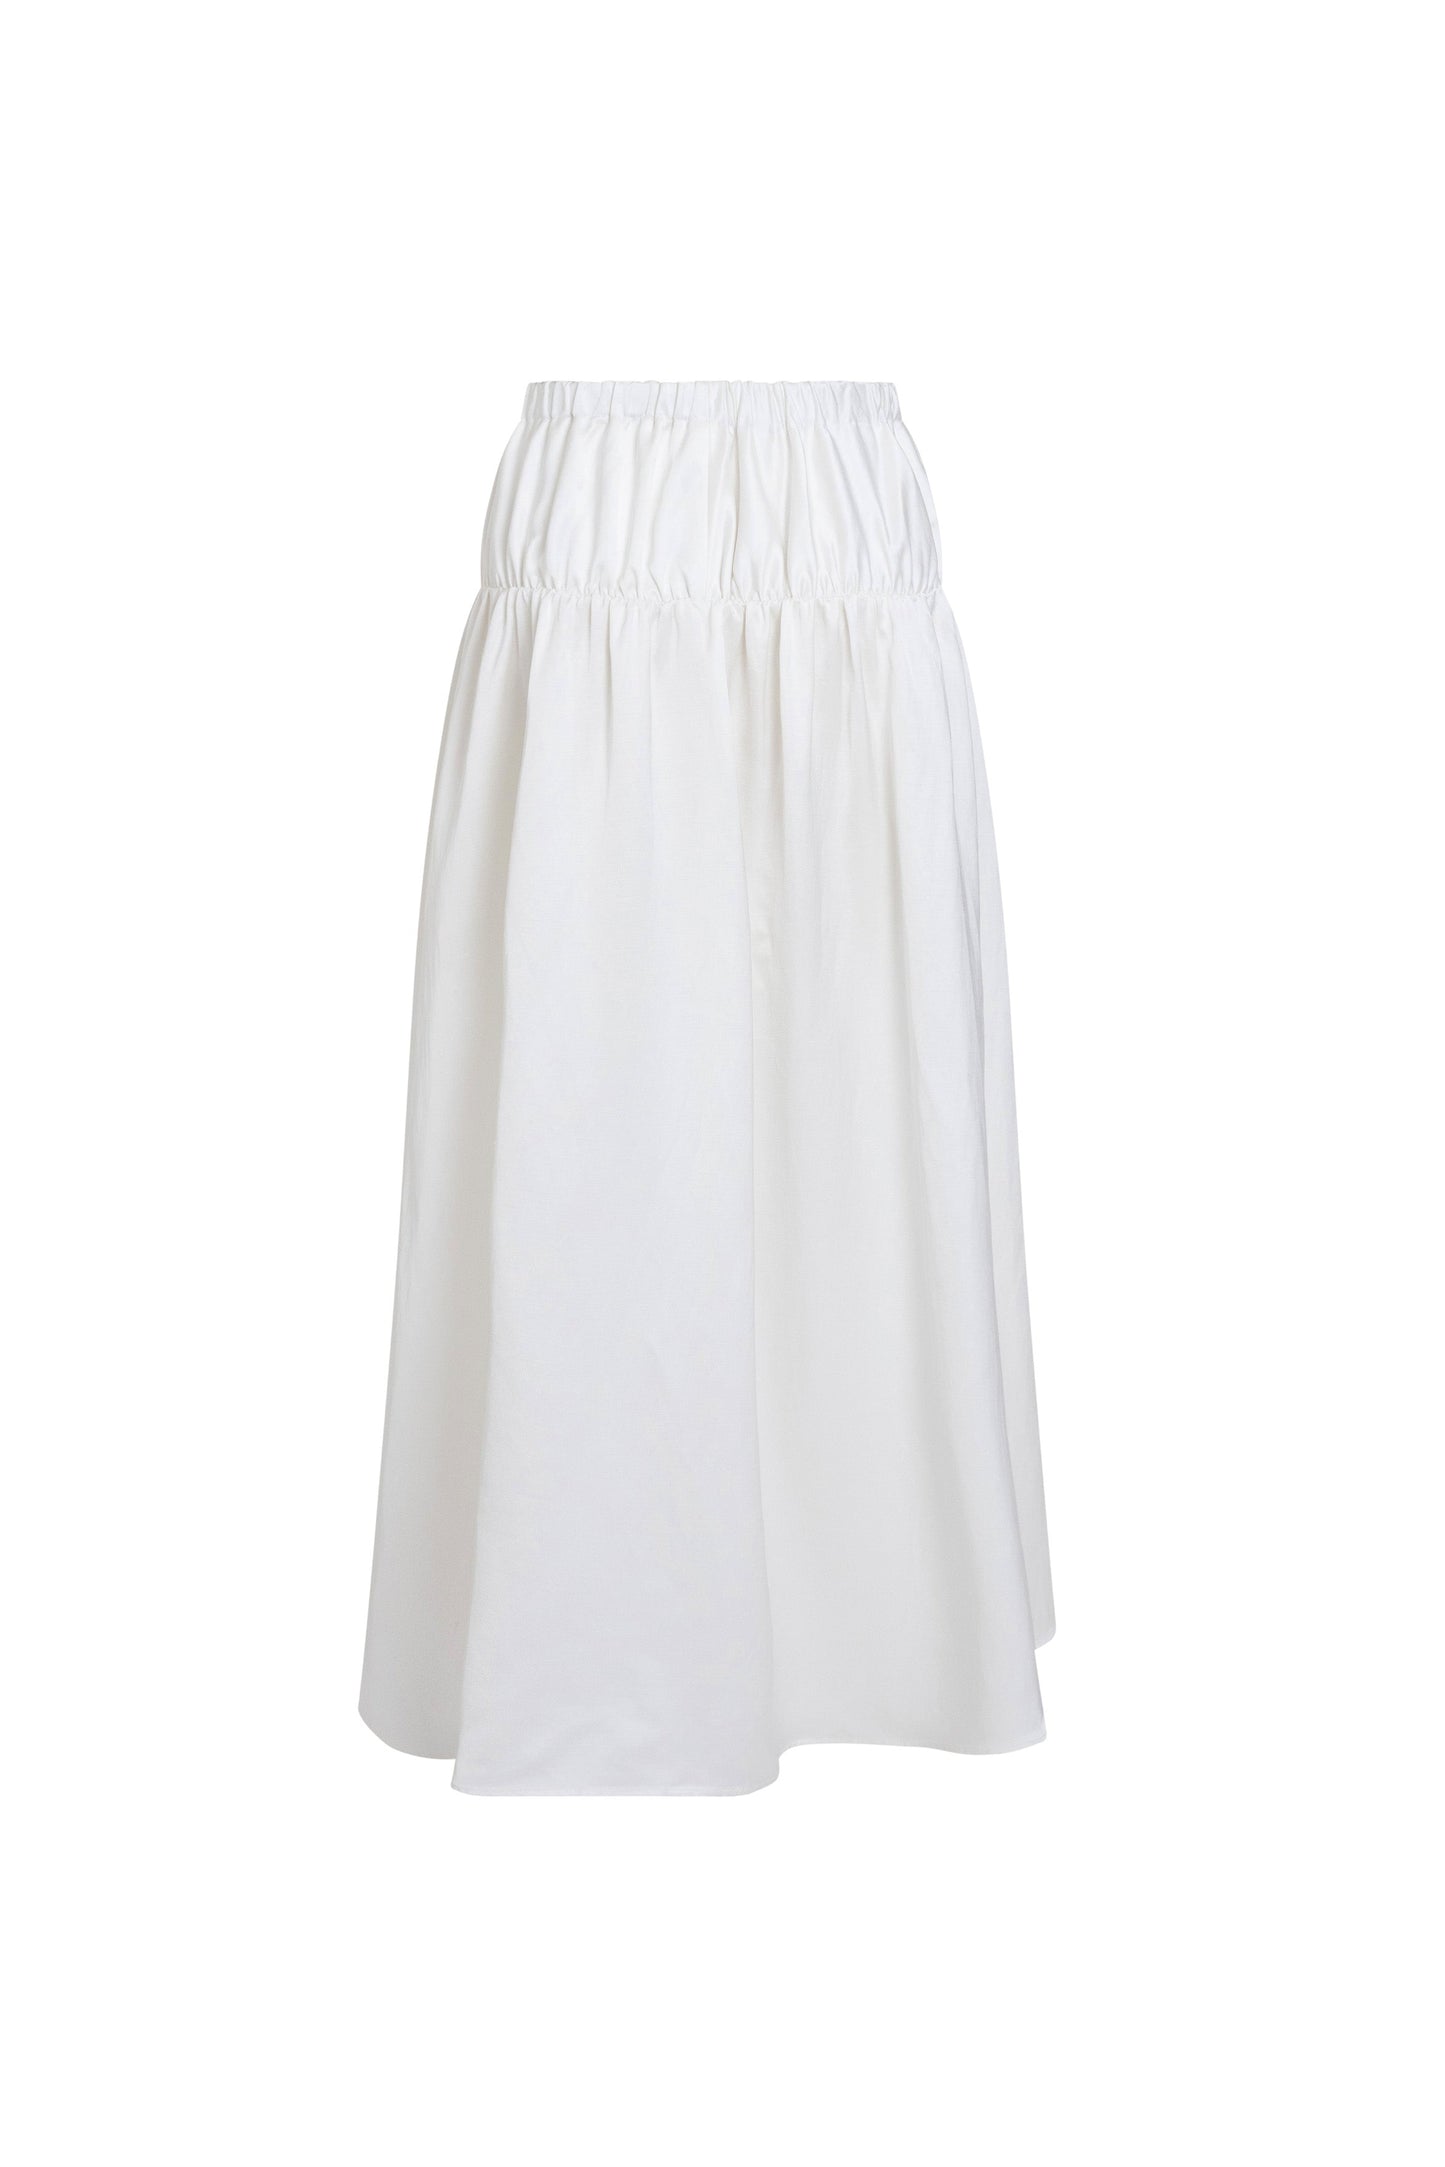 Cammie Viscose/Linen Skirt - Pearl